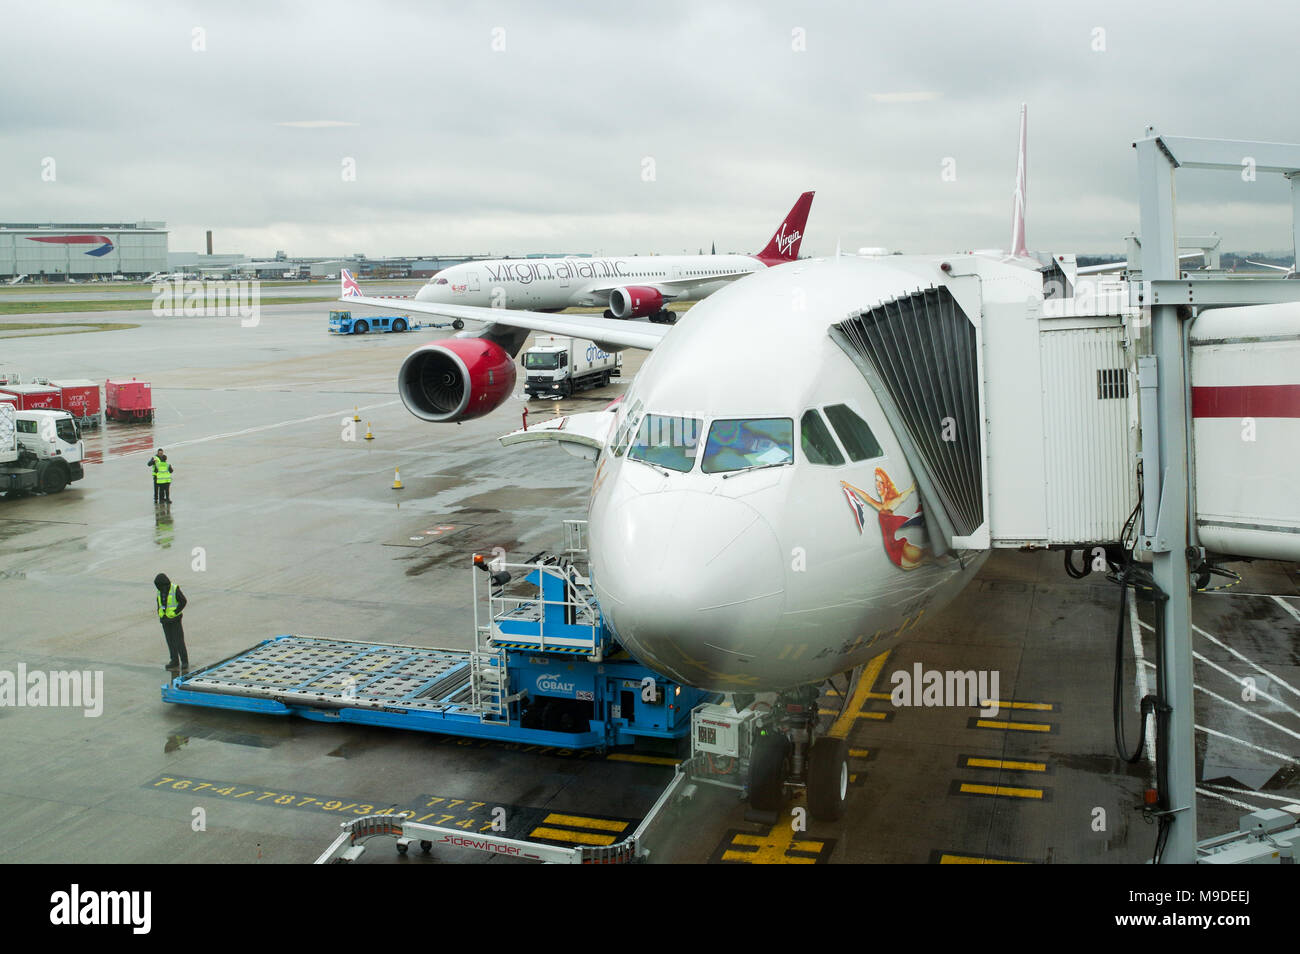 Virgin Atlantic Airbus A340 la préparation pour le départ alors qu'un Boeing 787 Virgin passe en arrière-plan à l'aéroport Heathrow de Londres Banque D'Images